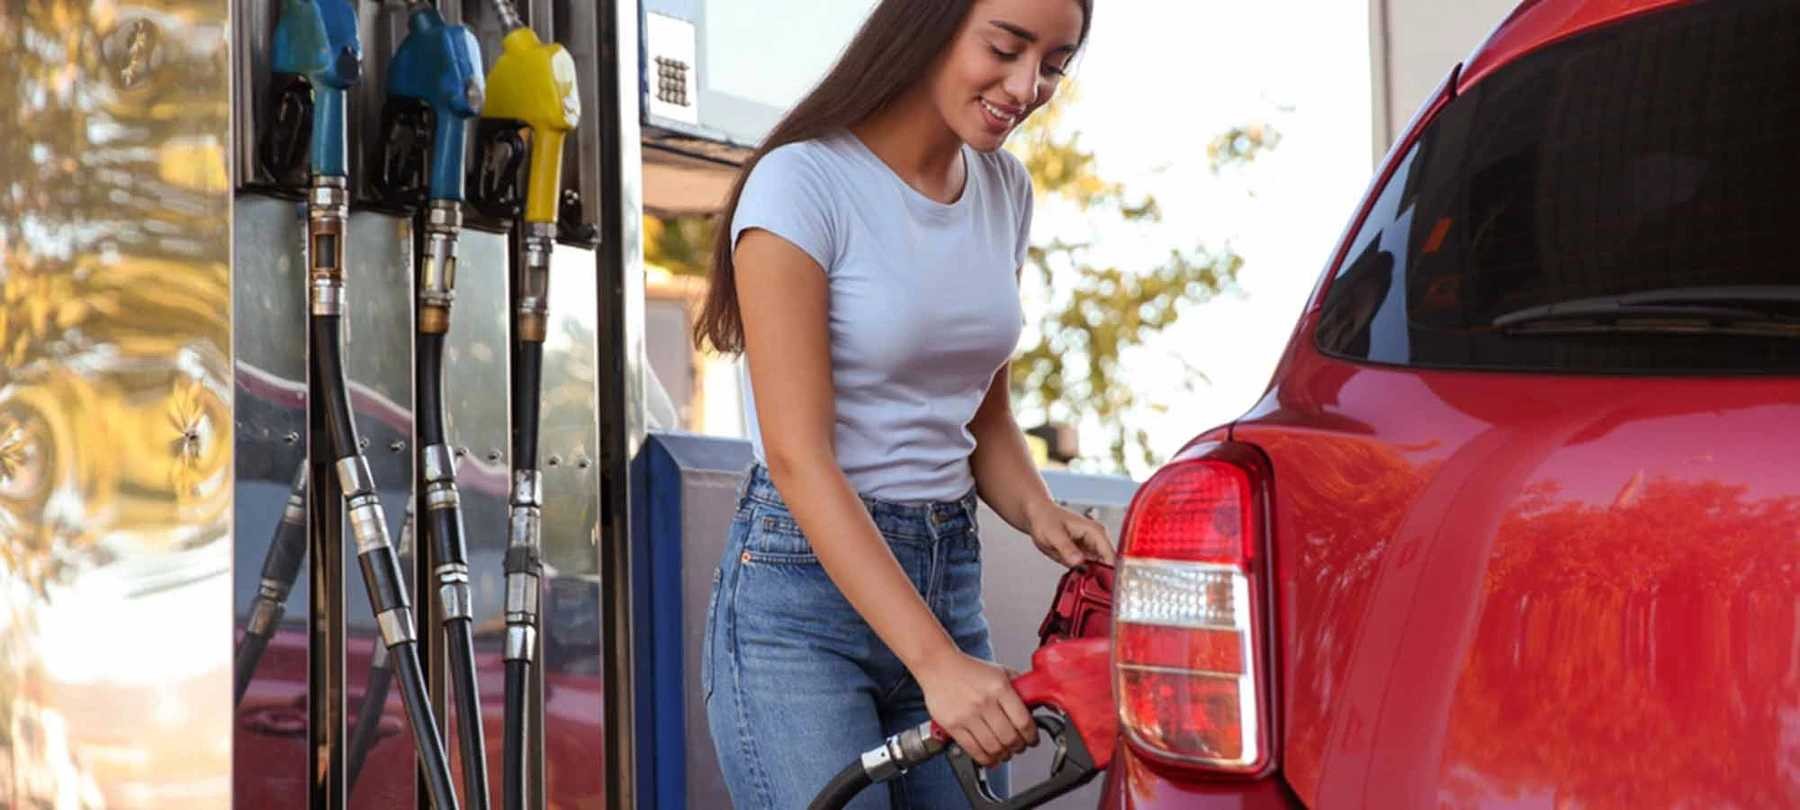 Hoe kan je op brandstof besparen? Onze redactie onderzocht zes manieren